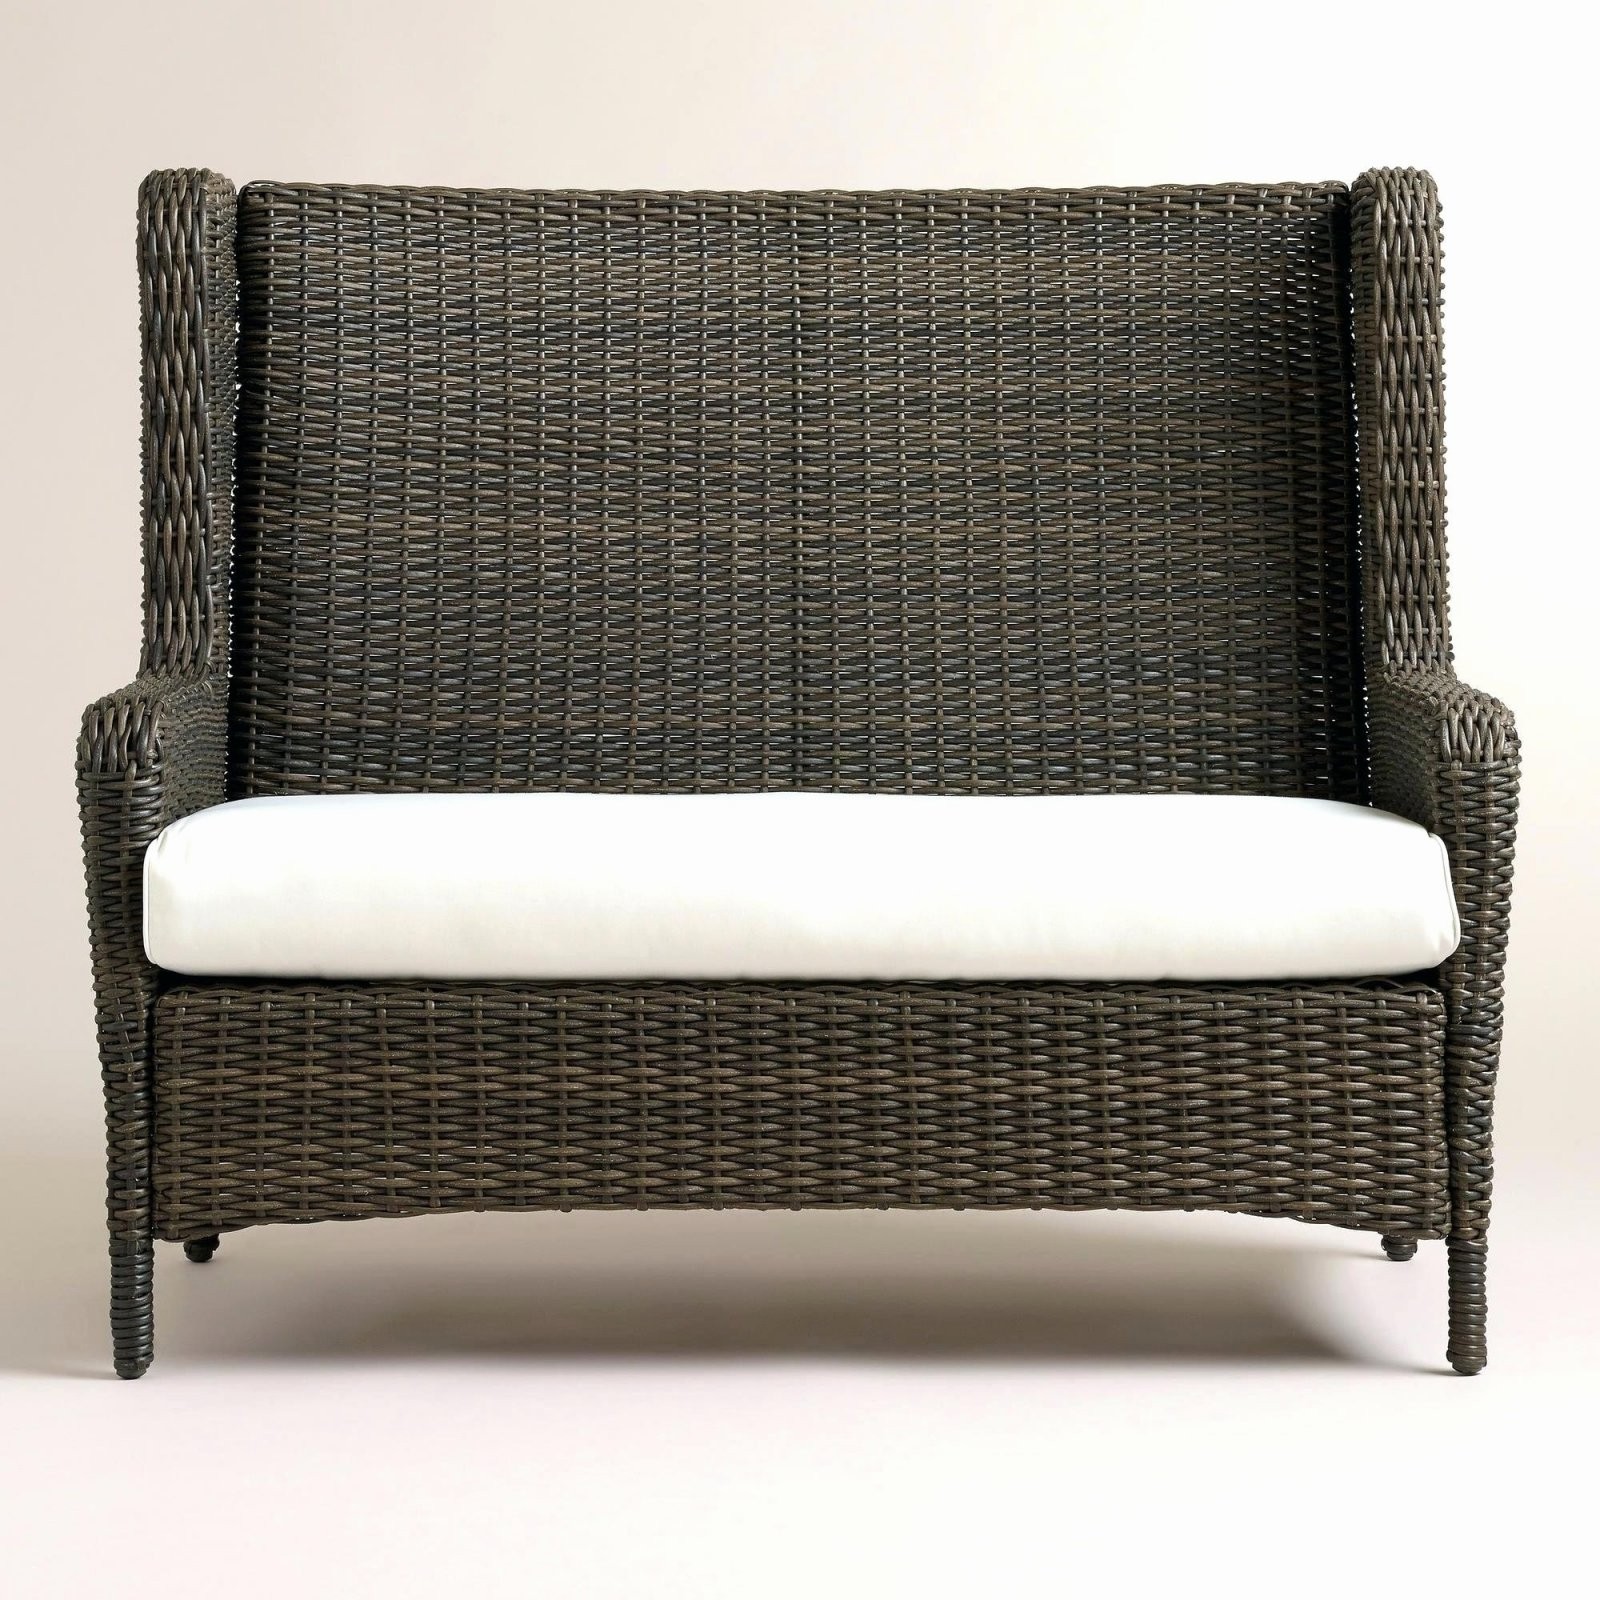 2 Sitzer Sofa Mit Recamiere Design 32 Das Beste Von Dieses Jahr von Rattan Sofa Mit Schlaffunktion Bild